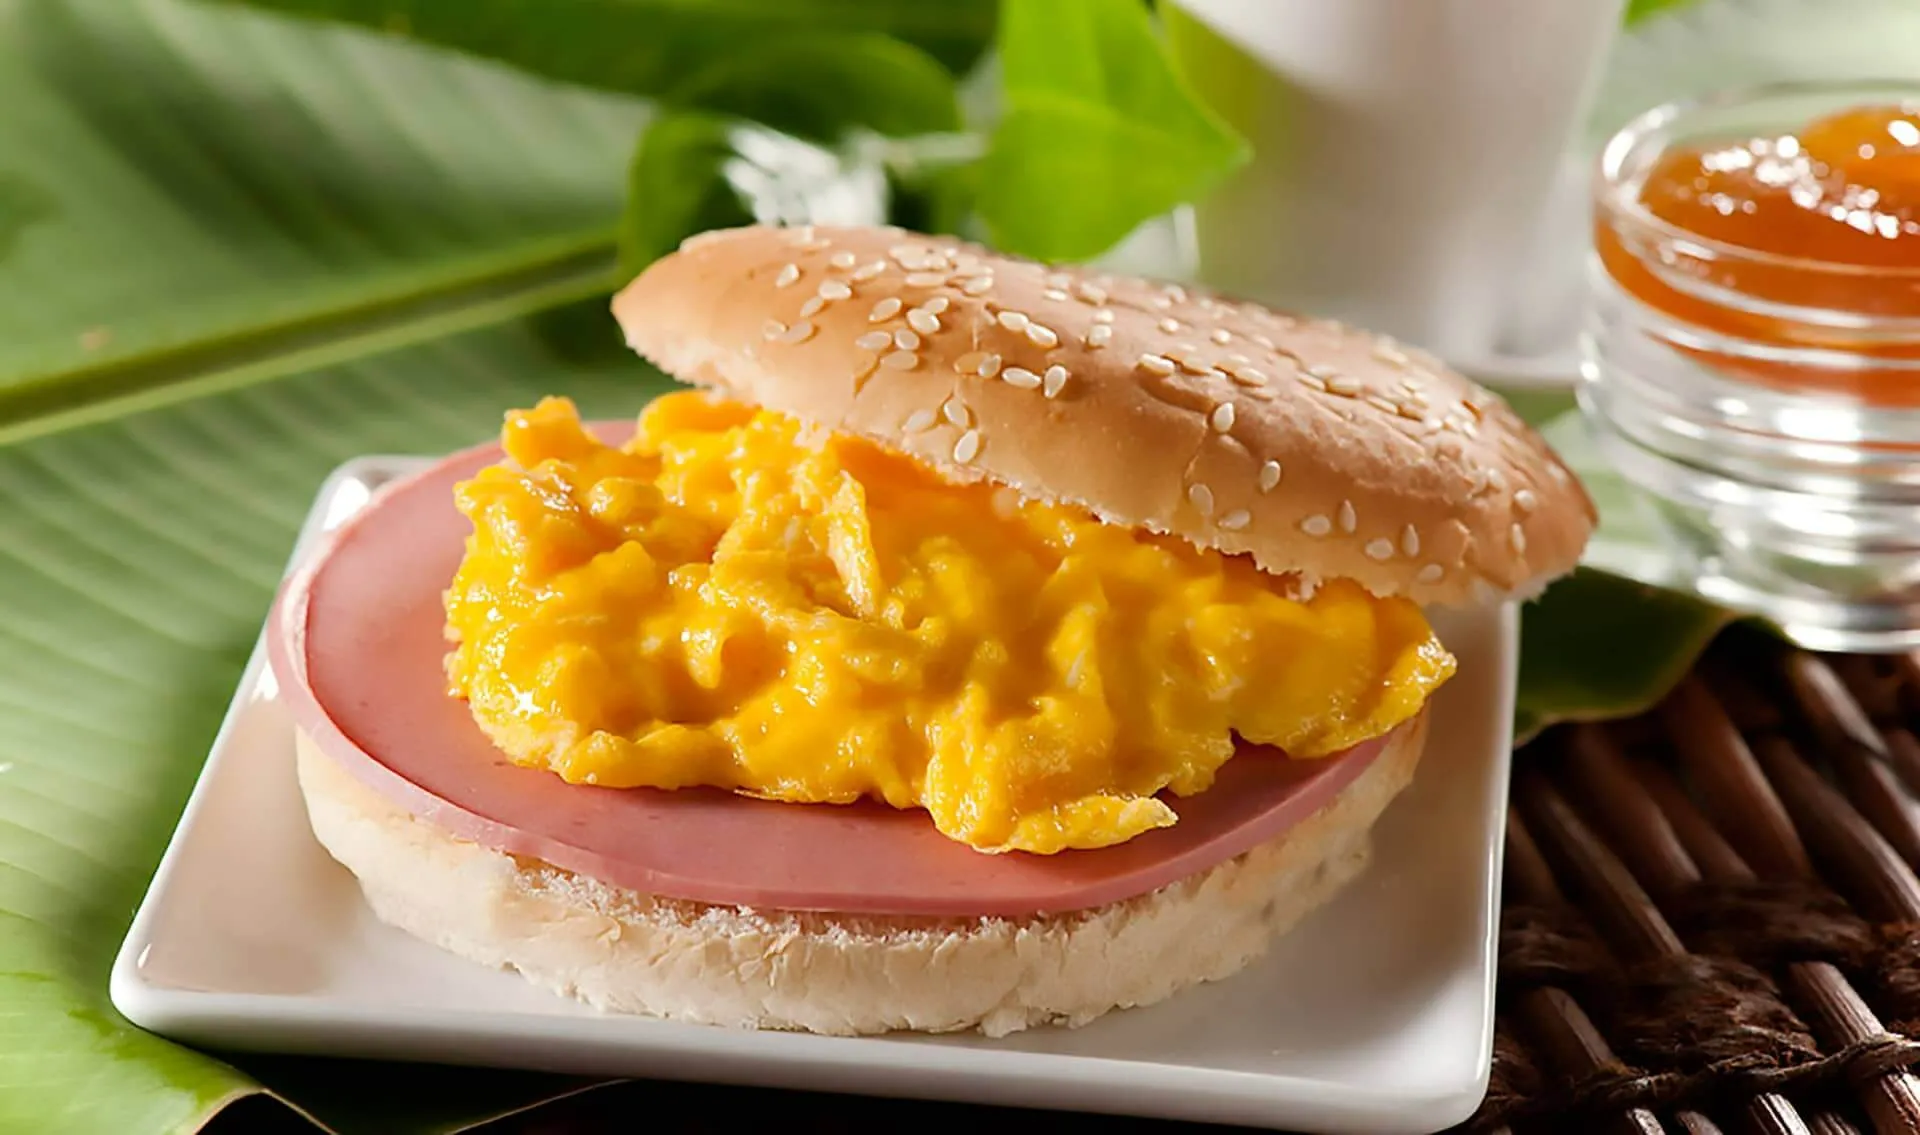 sandwich - sandwich con mortadela - sanduche de huevo - emparedado de huevo - huevo y jamón - recetas fáciles